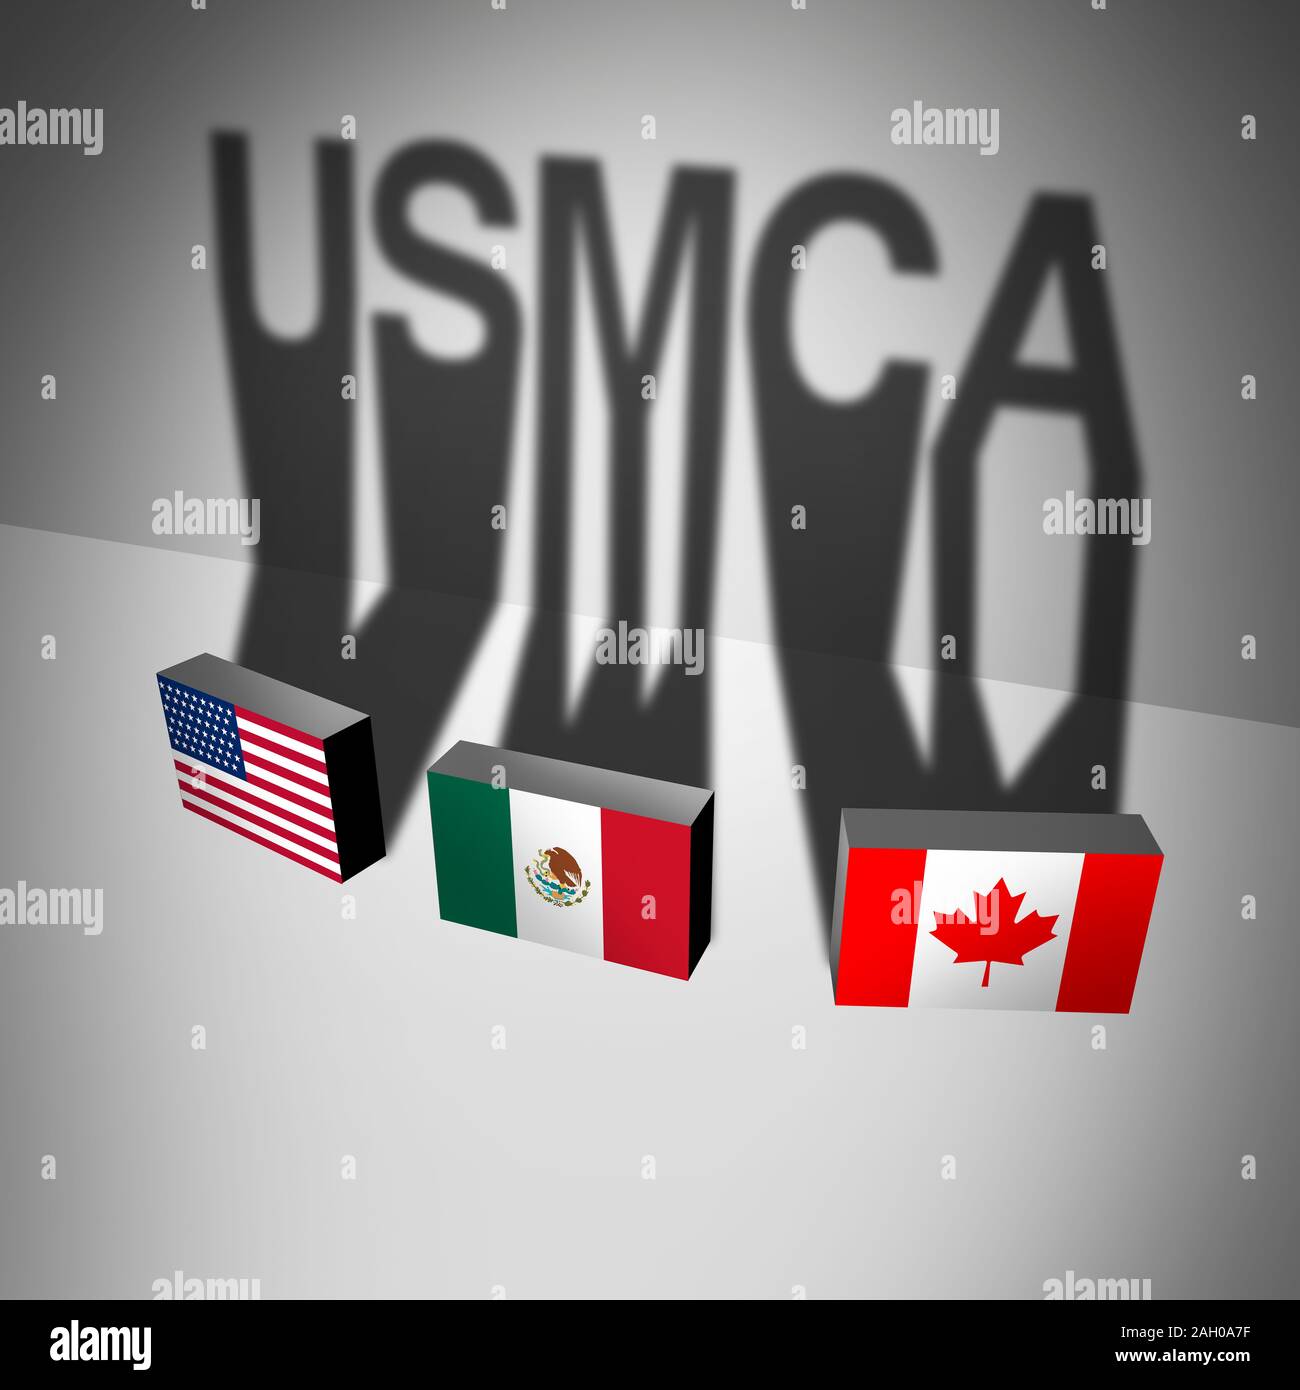 USMCA concept d'affaires comme les États-Unis Mexique Canada entente symbole comme un accord commercial et de négociation pour l'accord économique mexicaine-américaine. Banque D'Images